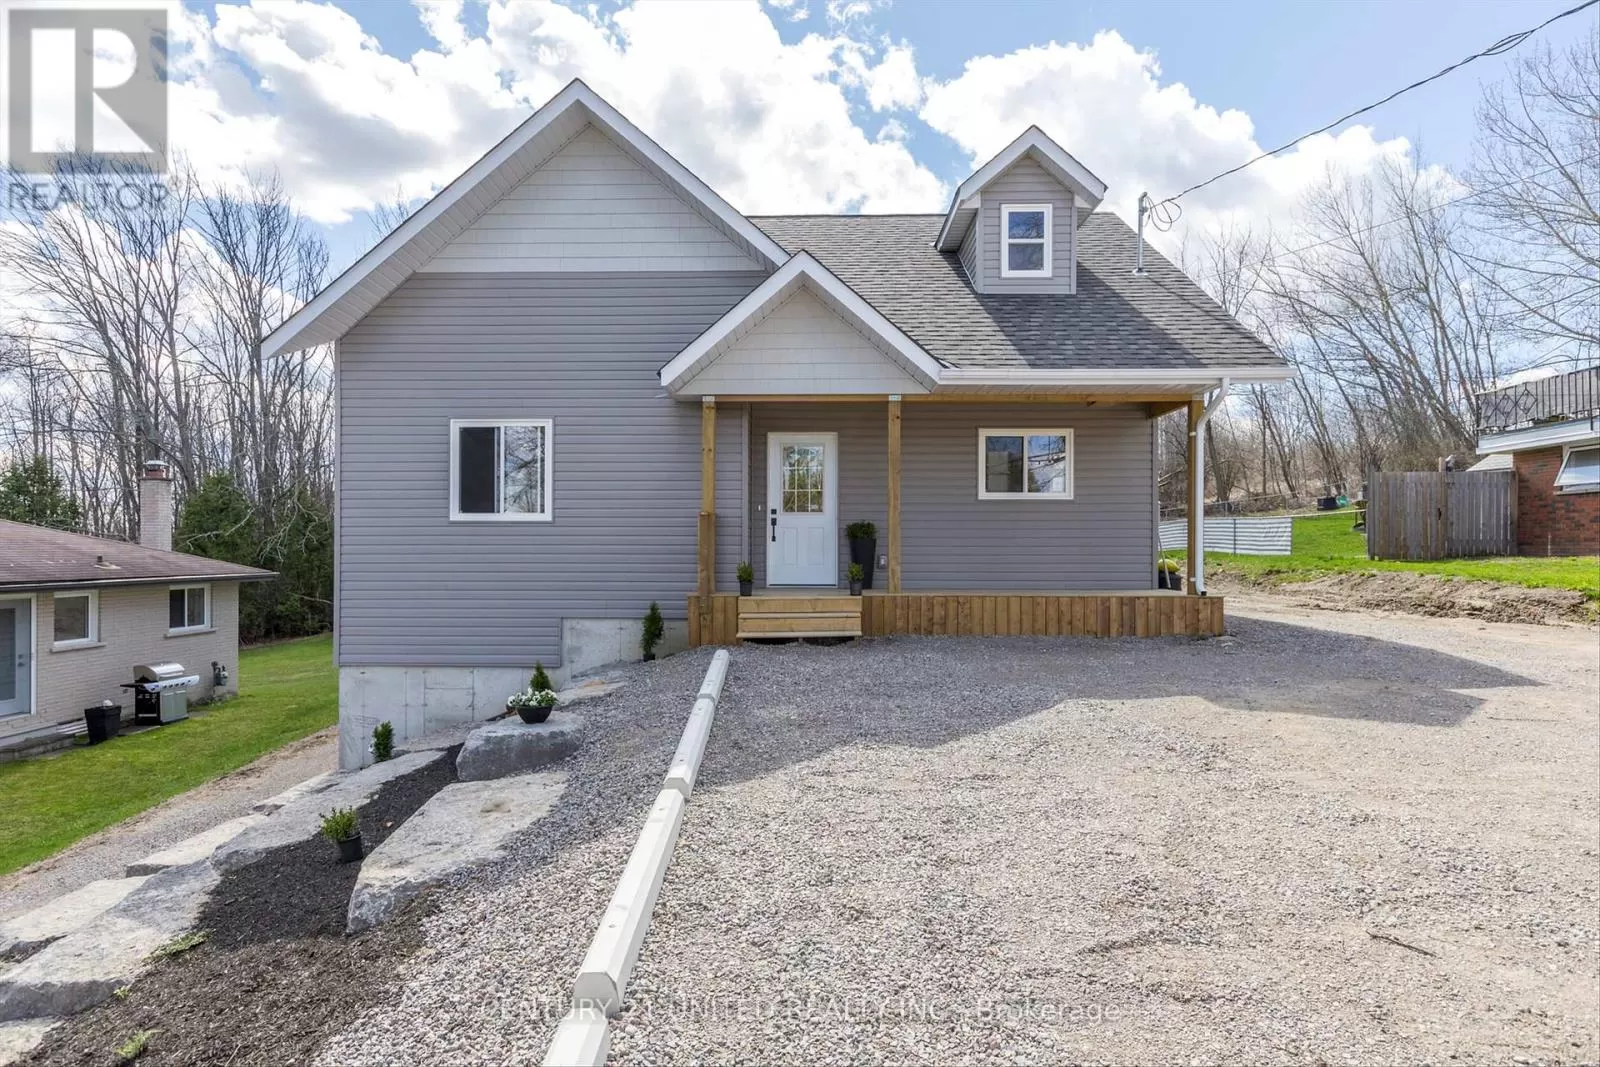 House for rent: 909 Fairbairn St, Smith-Ennismore-Lakefield, Ontario K9H 6C2